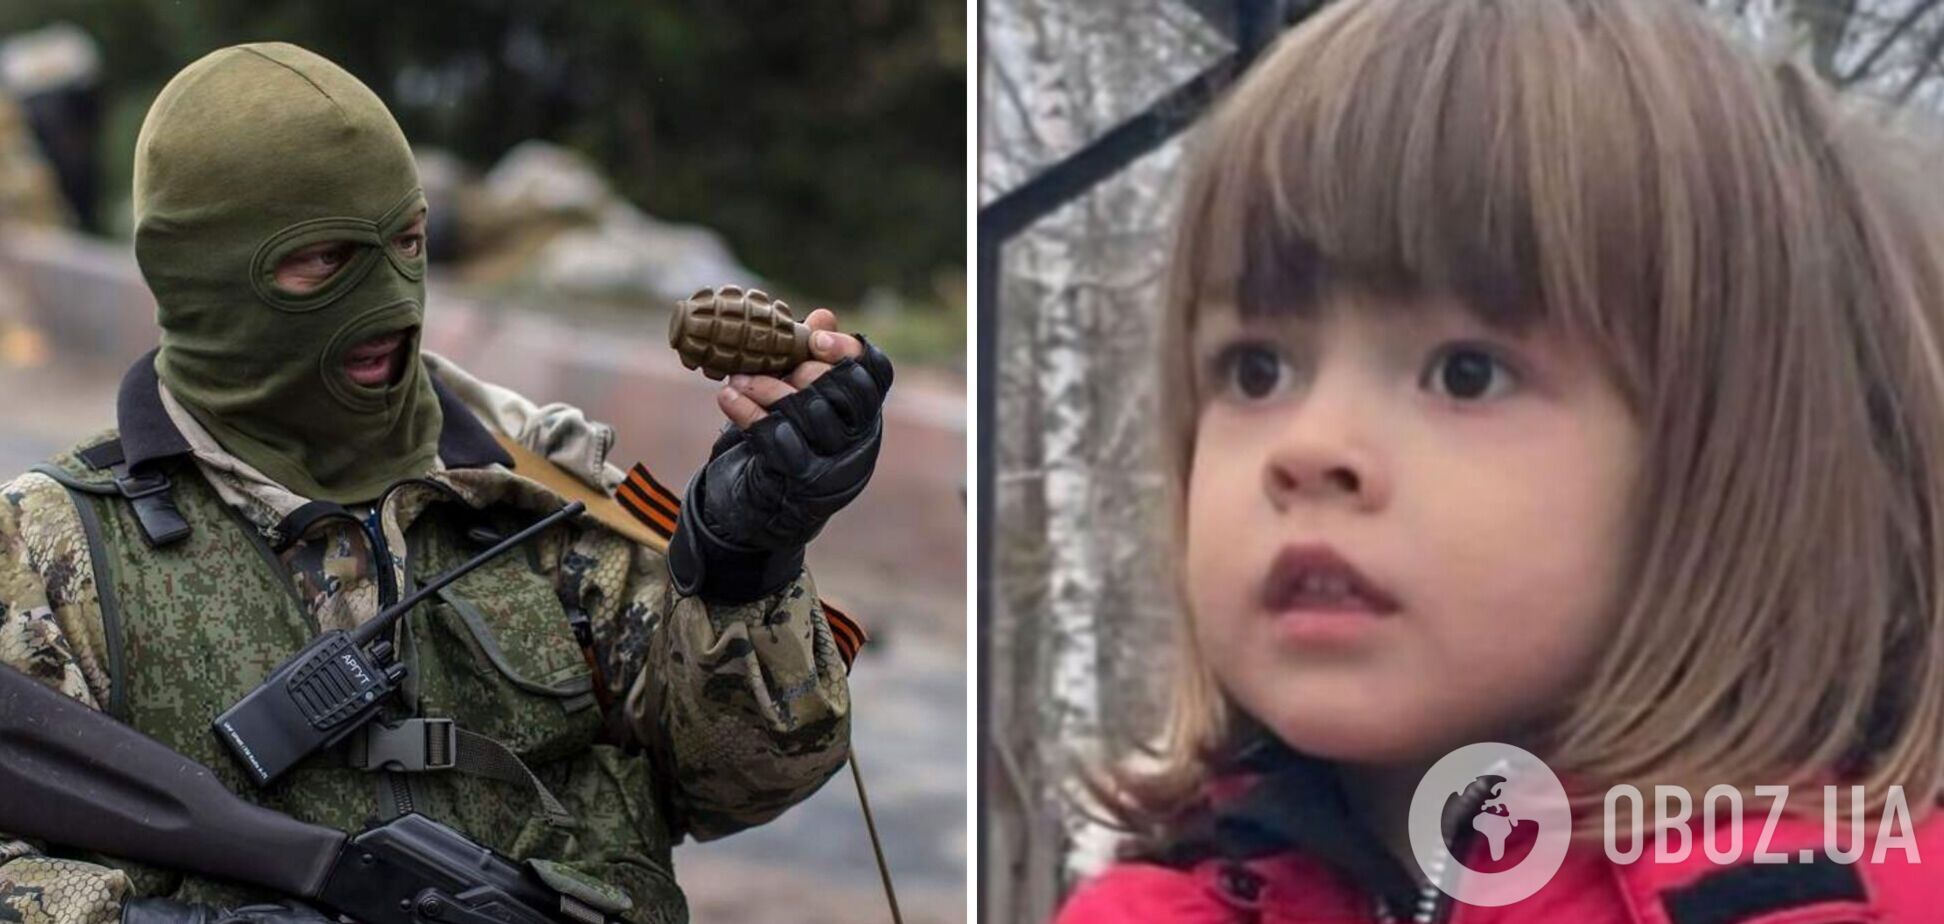 Чотирирічного хлопчика Сашка, якого шукала вся Україна, знайшли мертвим